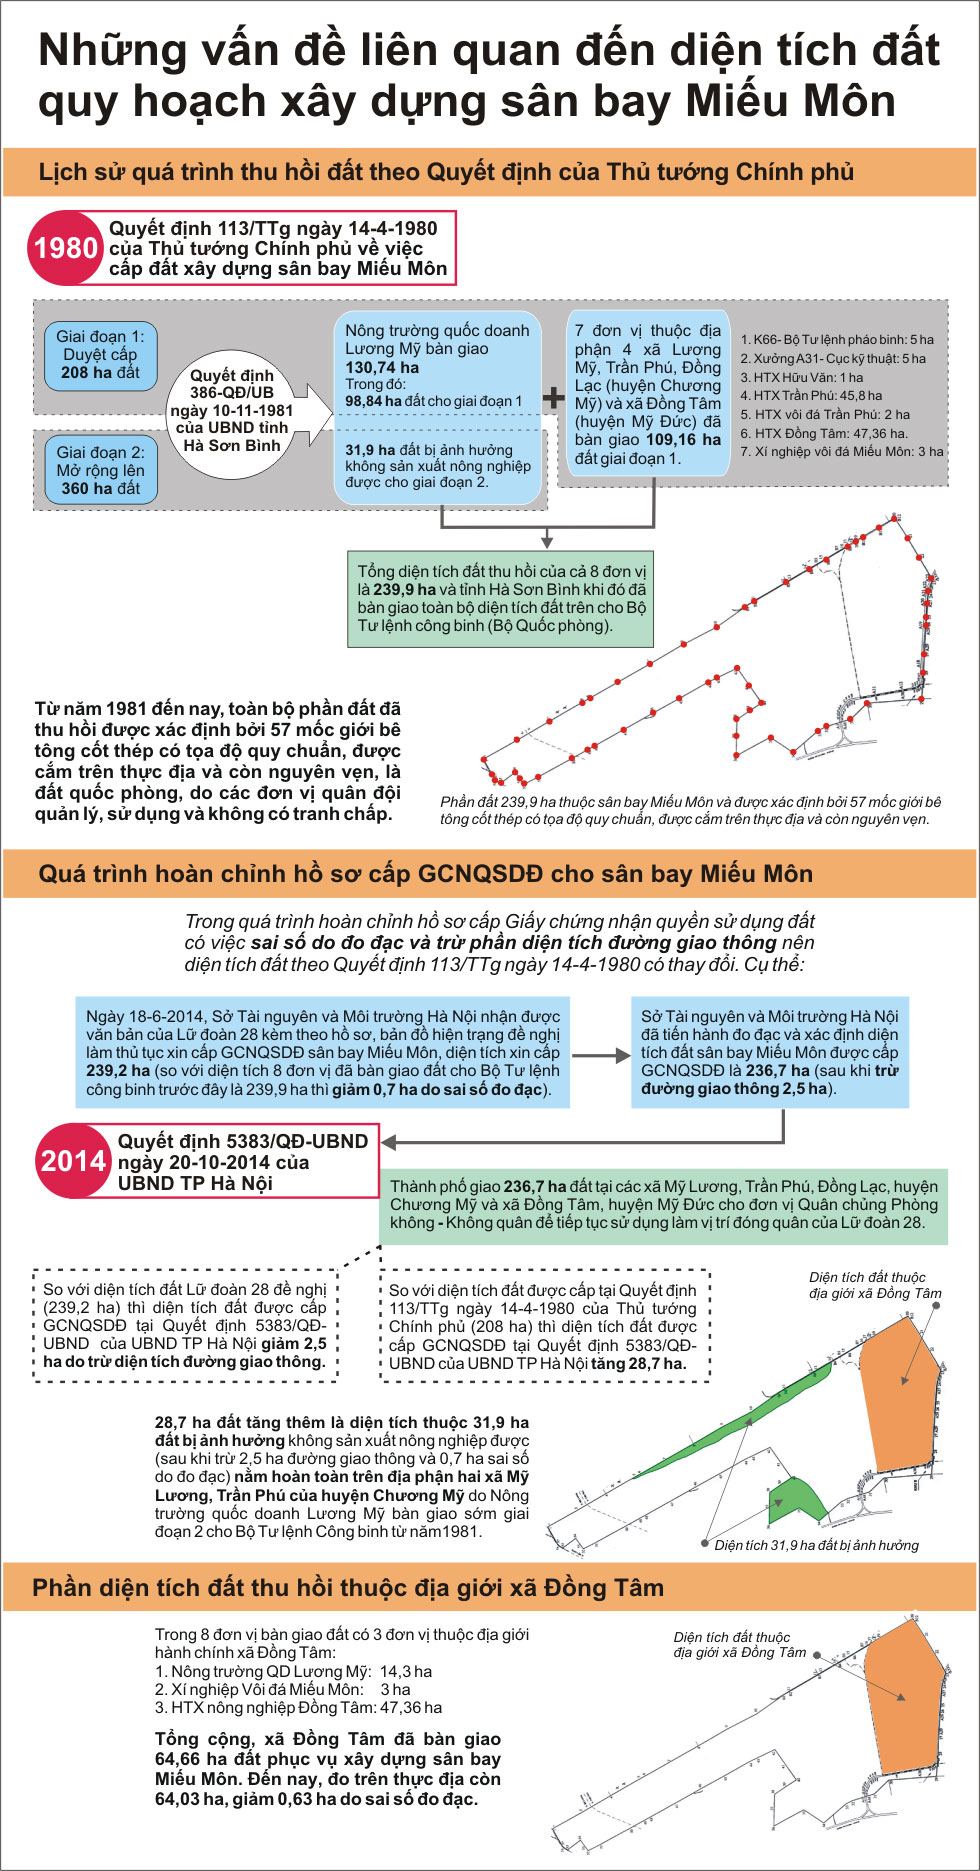 Infographic: Những vấn đề liên quan đến diện tích đất quy hoạch xây dựng sân bay Miếu Môn